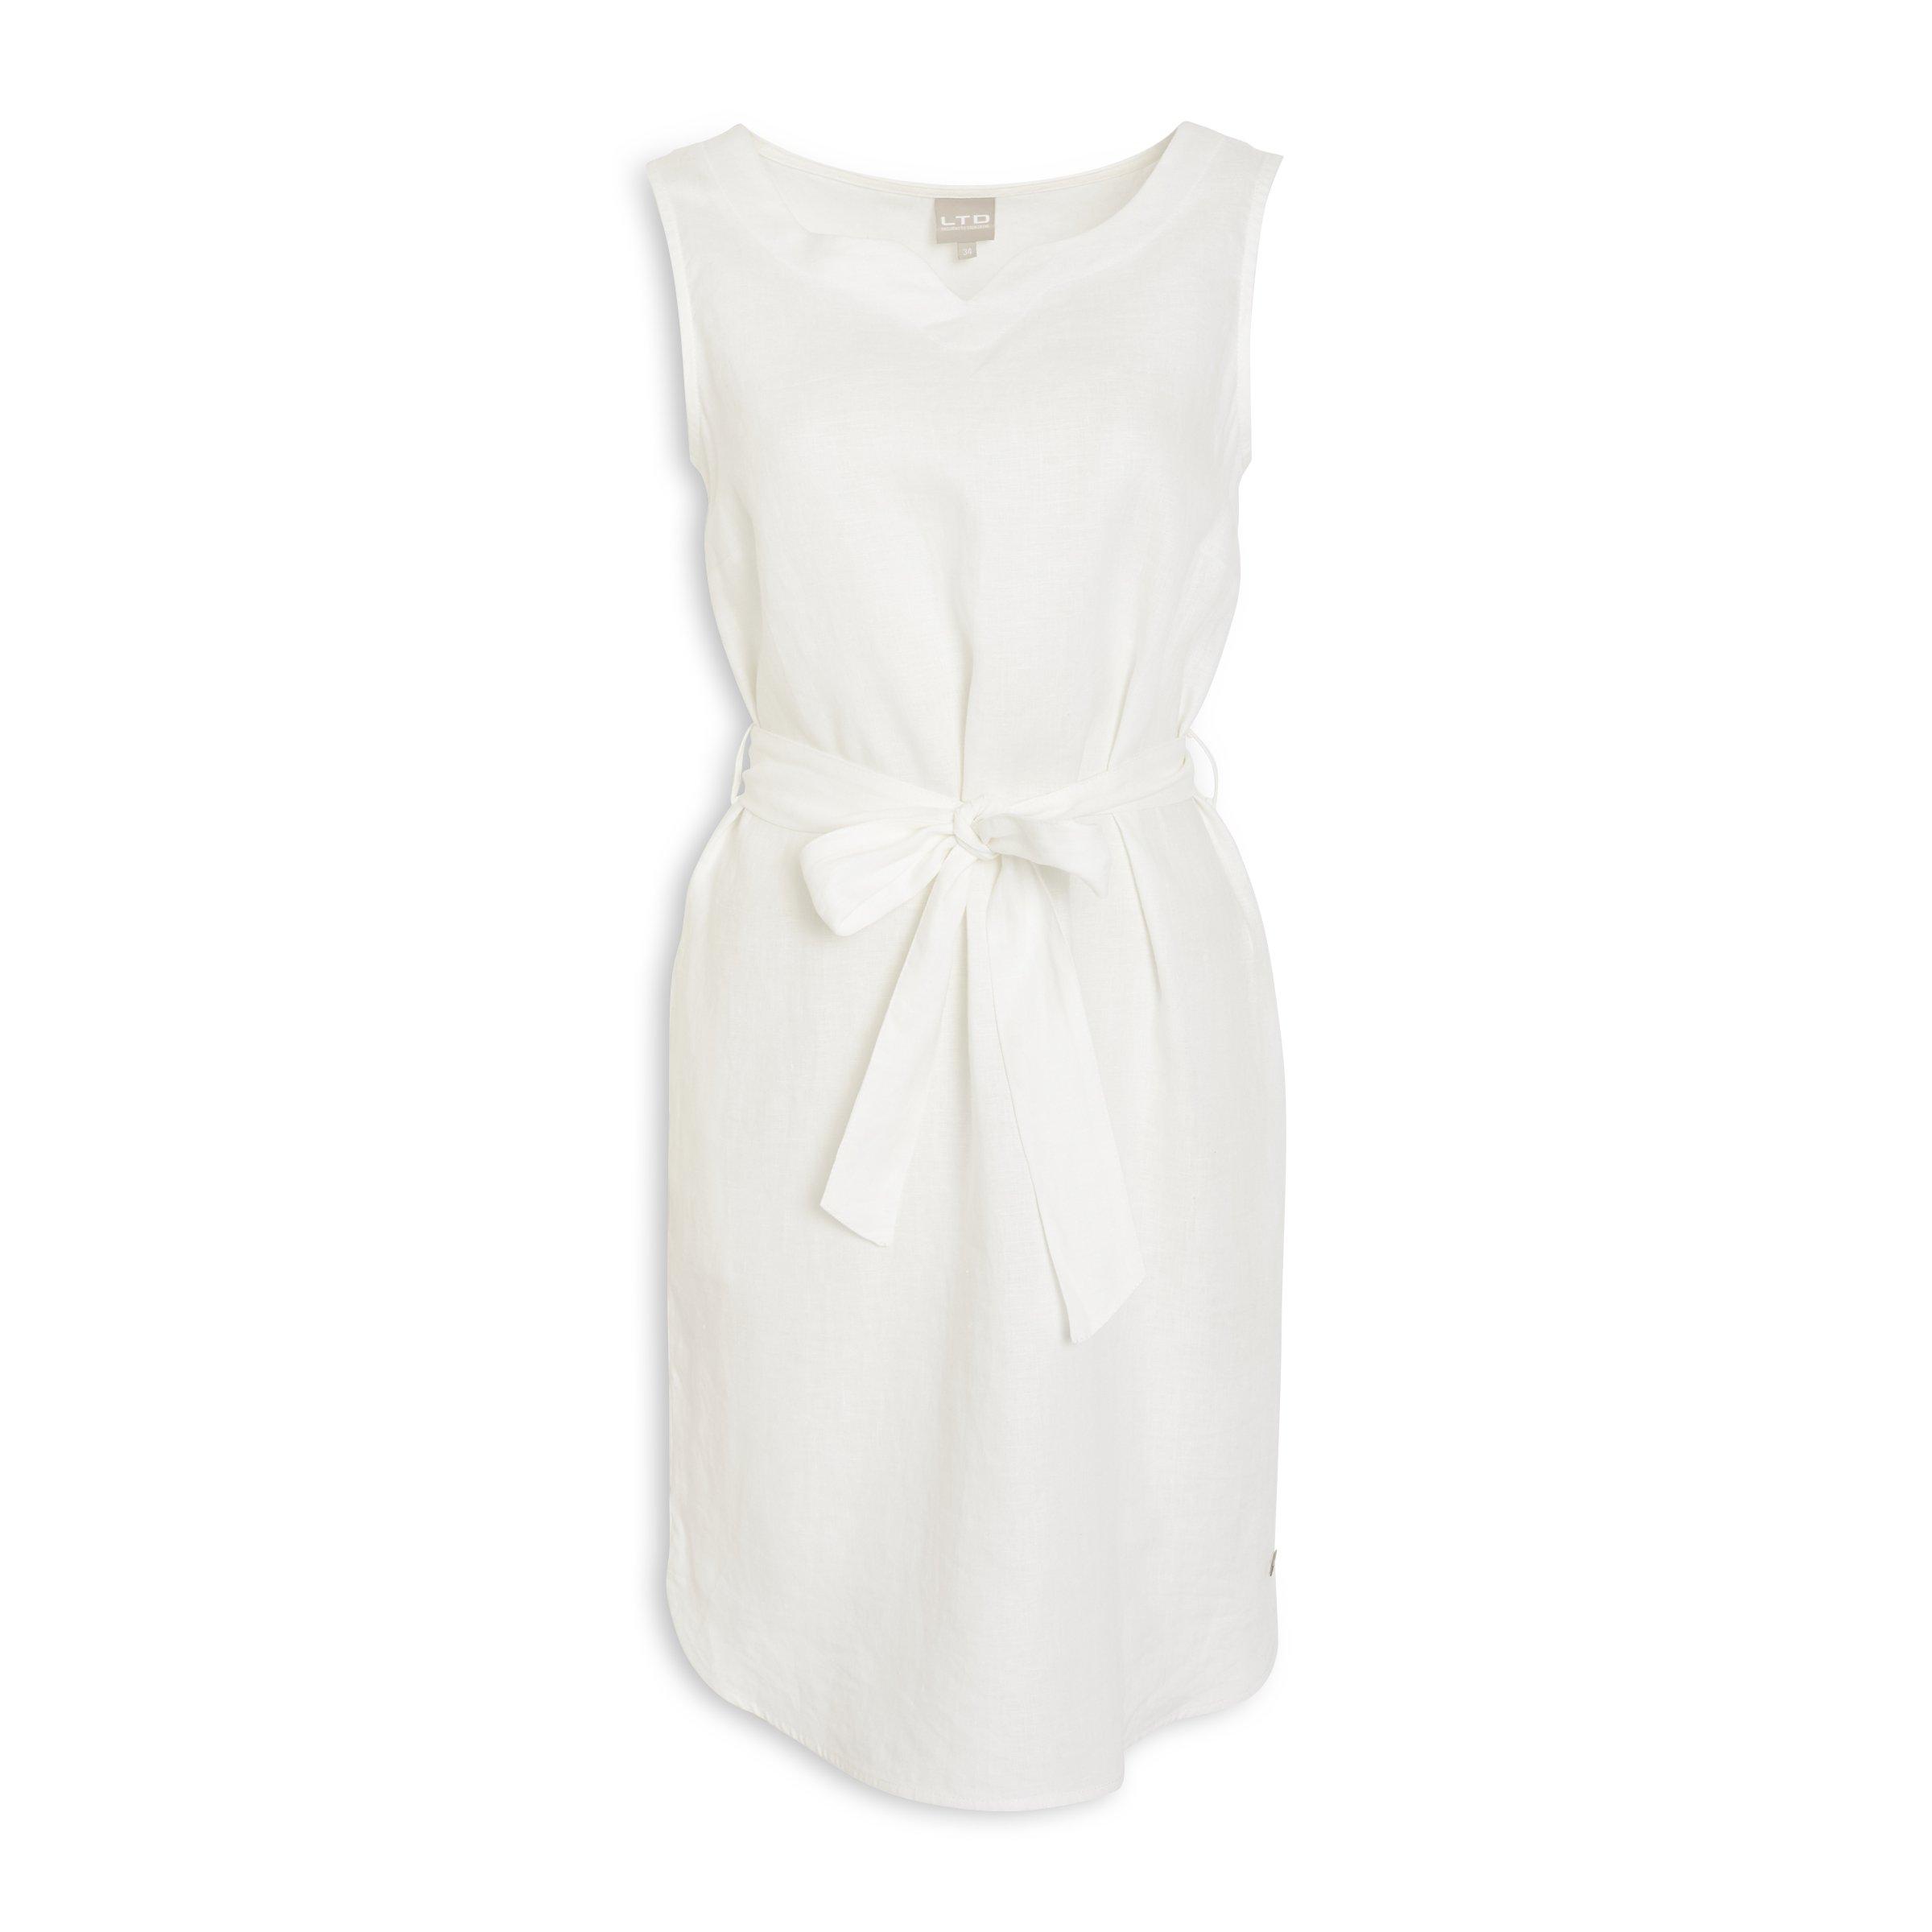 Truworths White Dresses 2021 | Dresses Images 2022